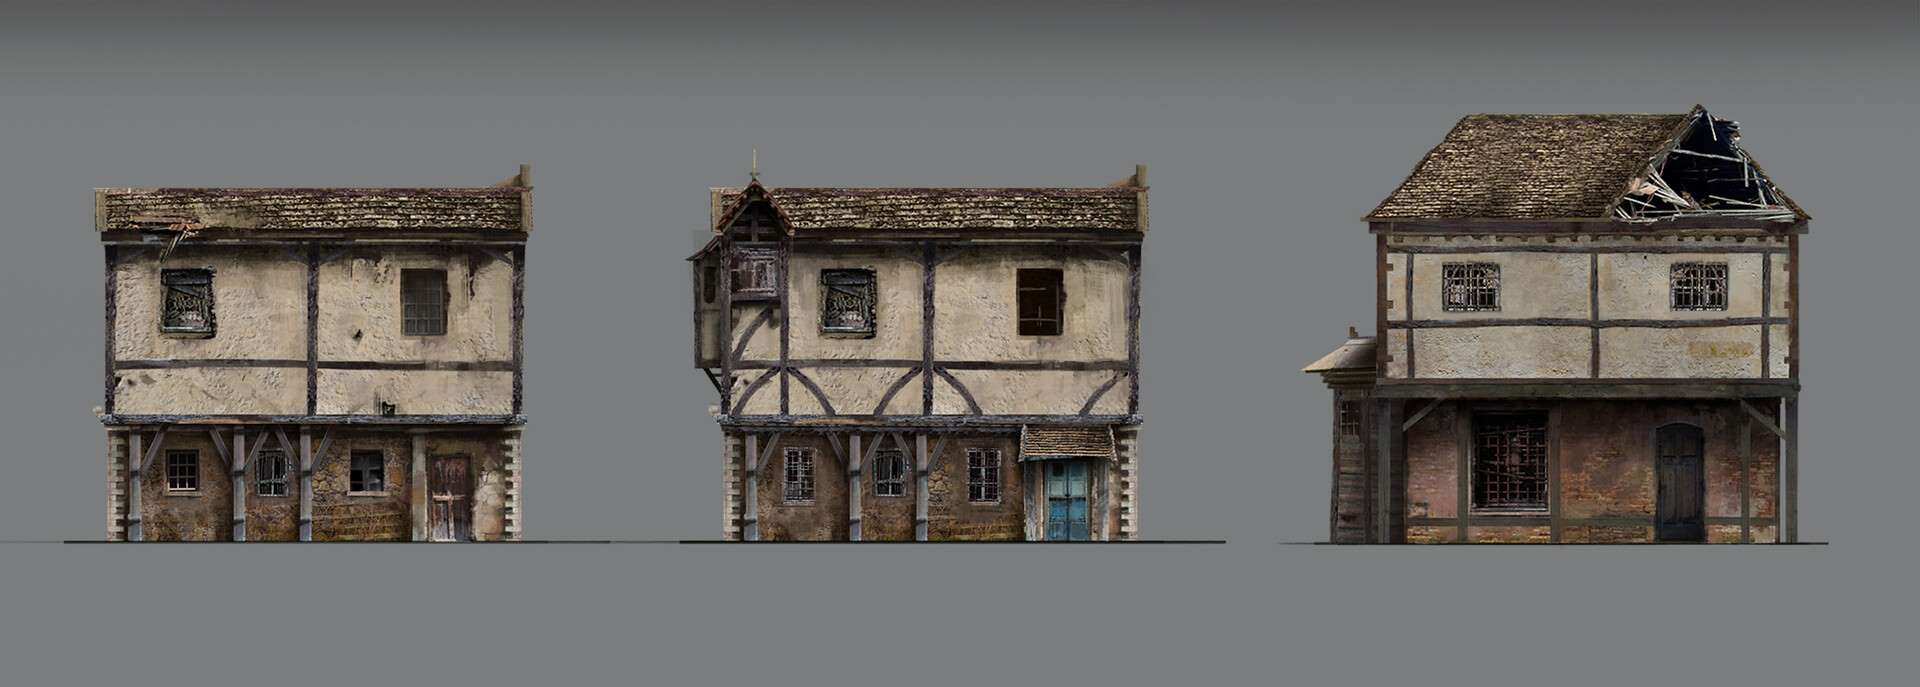 古老的房屋建筑素材